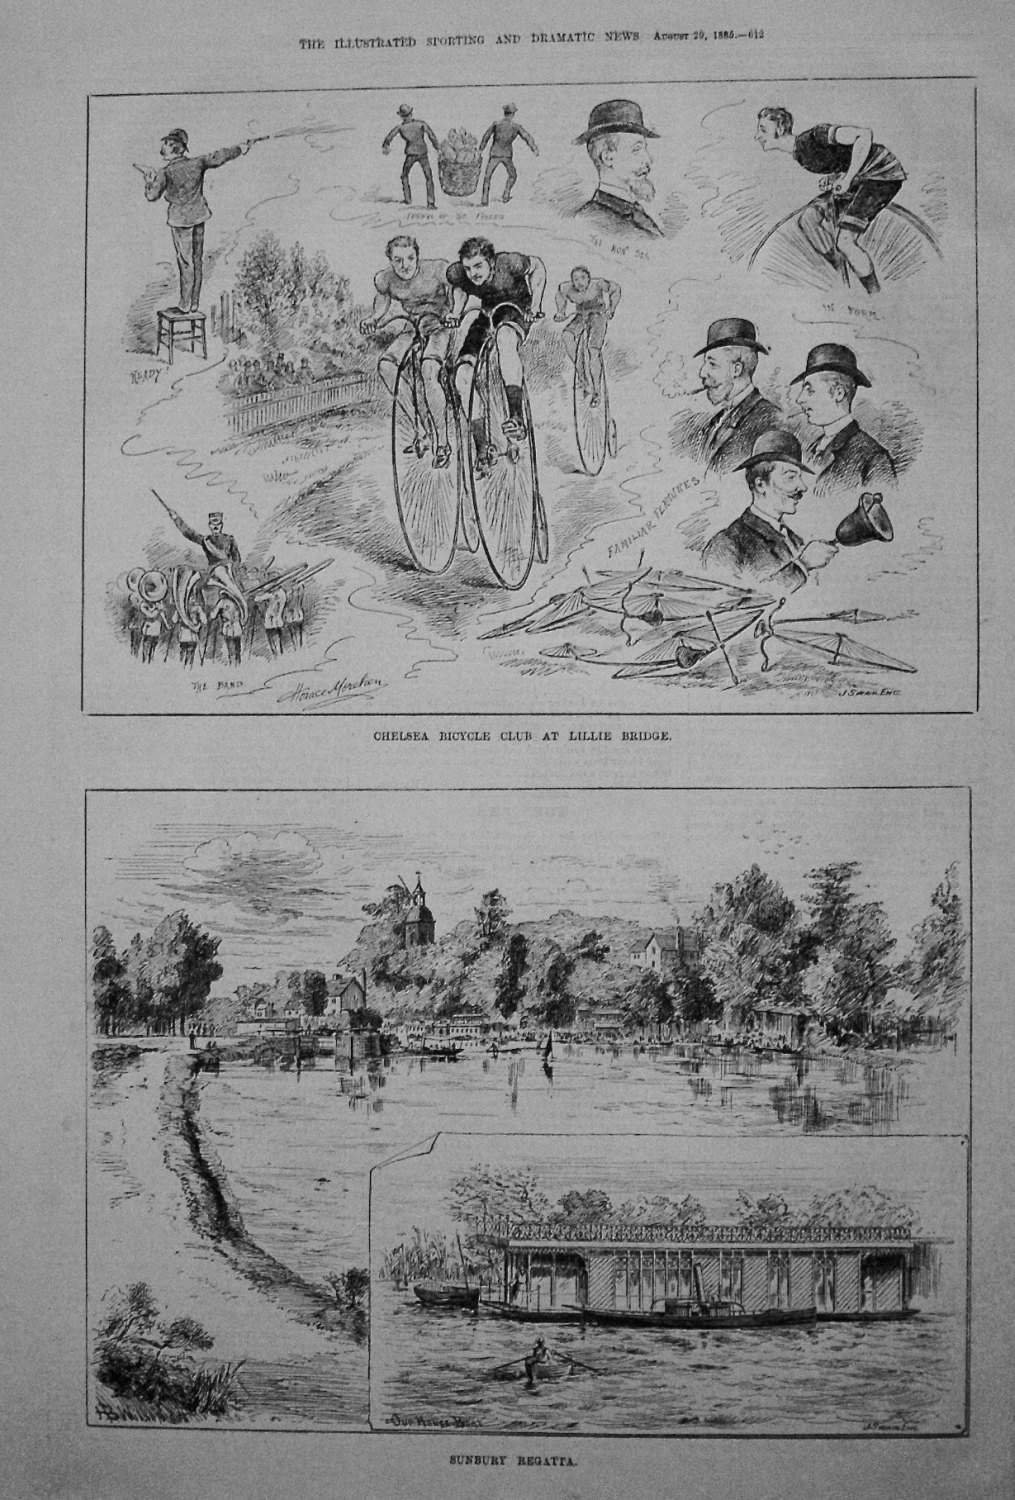 Chelsea Bicycle Club at Lillie Bridge. Sunbury Regatta. 1885